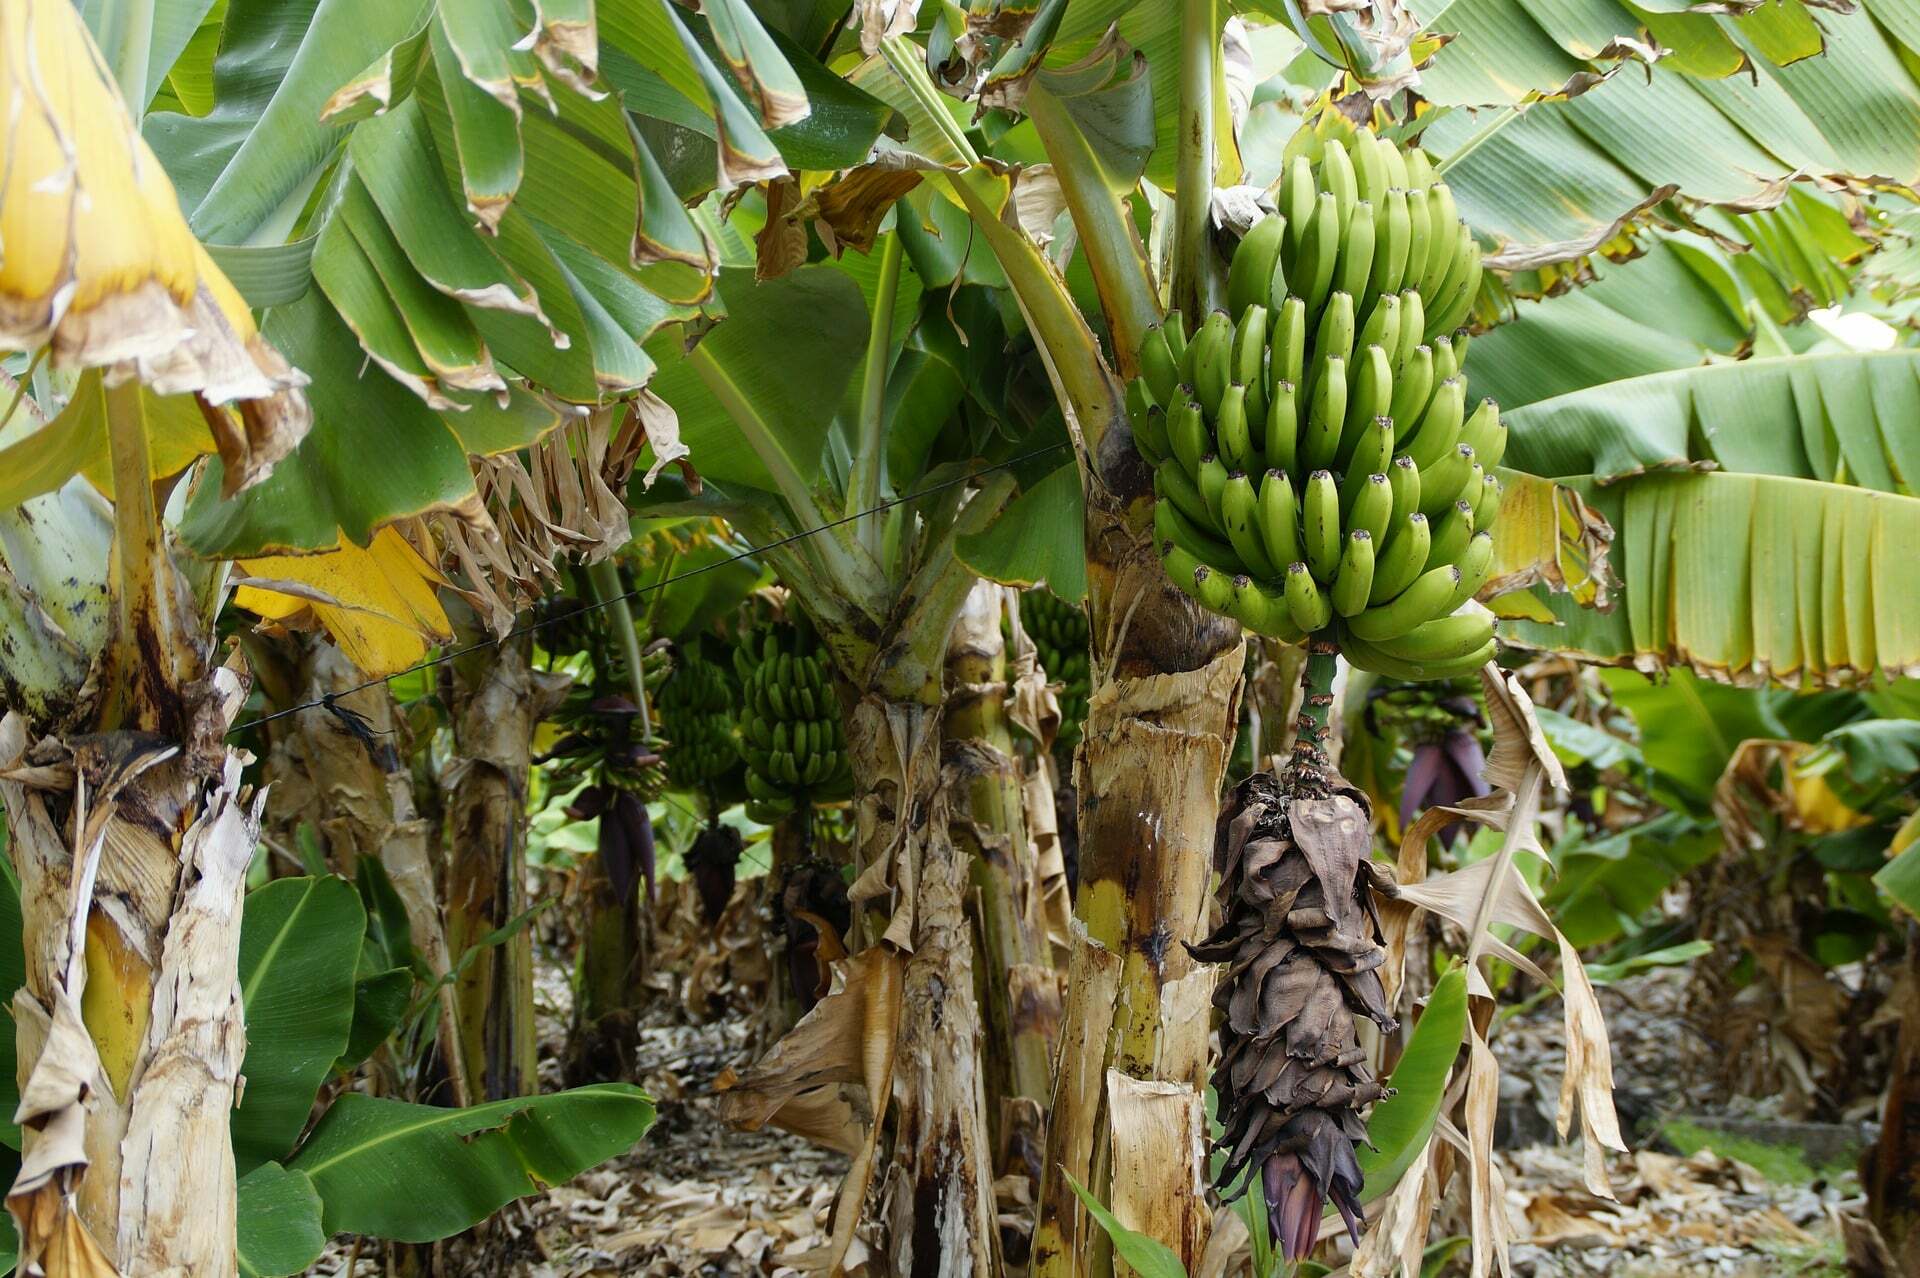 banana plants are not trees